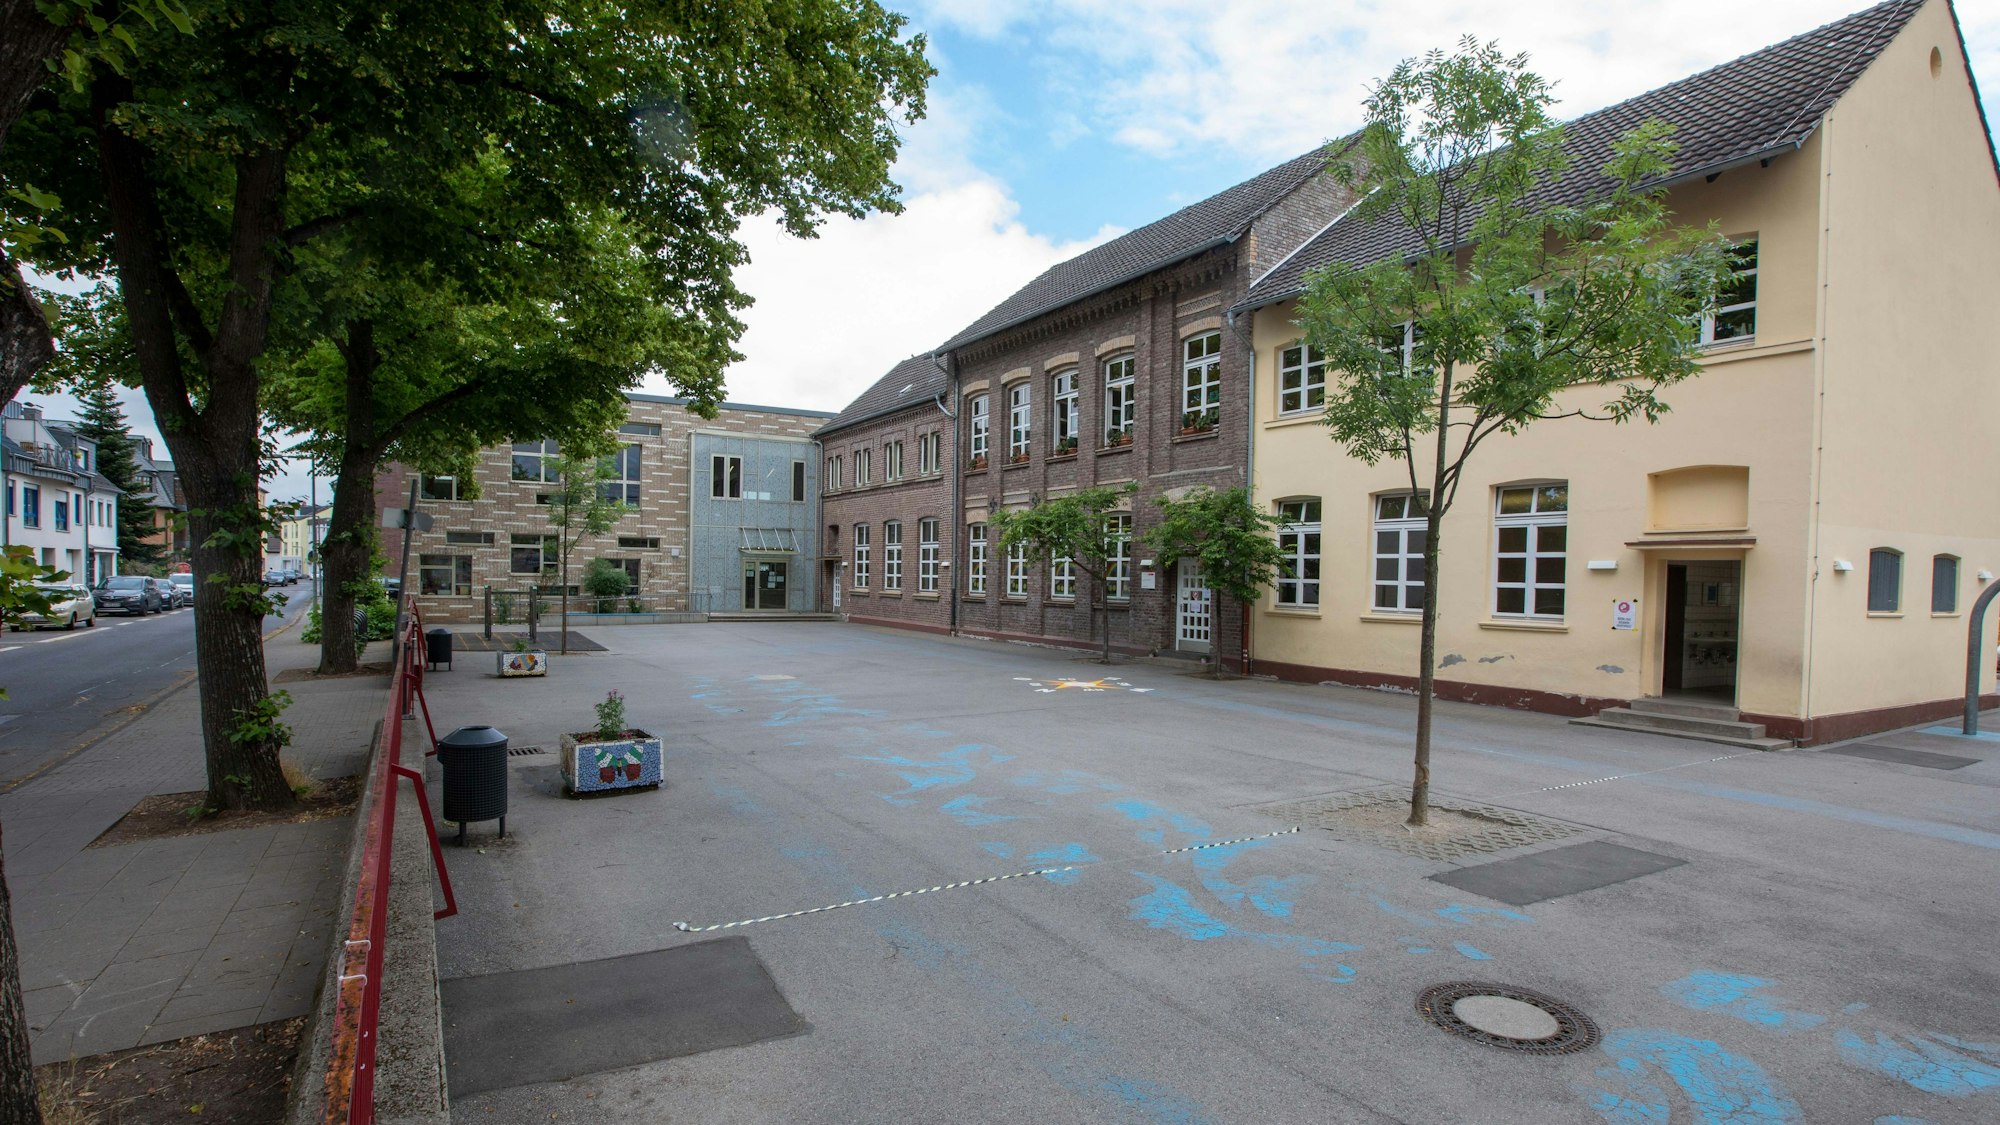 Die Gemeinschaftsgrundschule Hohe Straße in Ensen